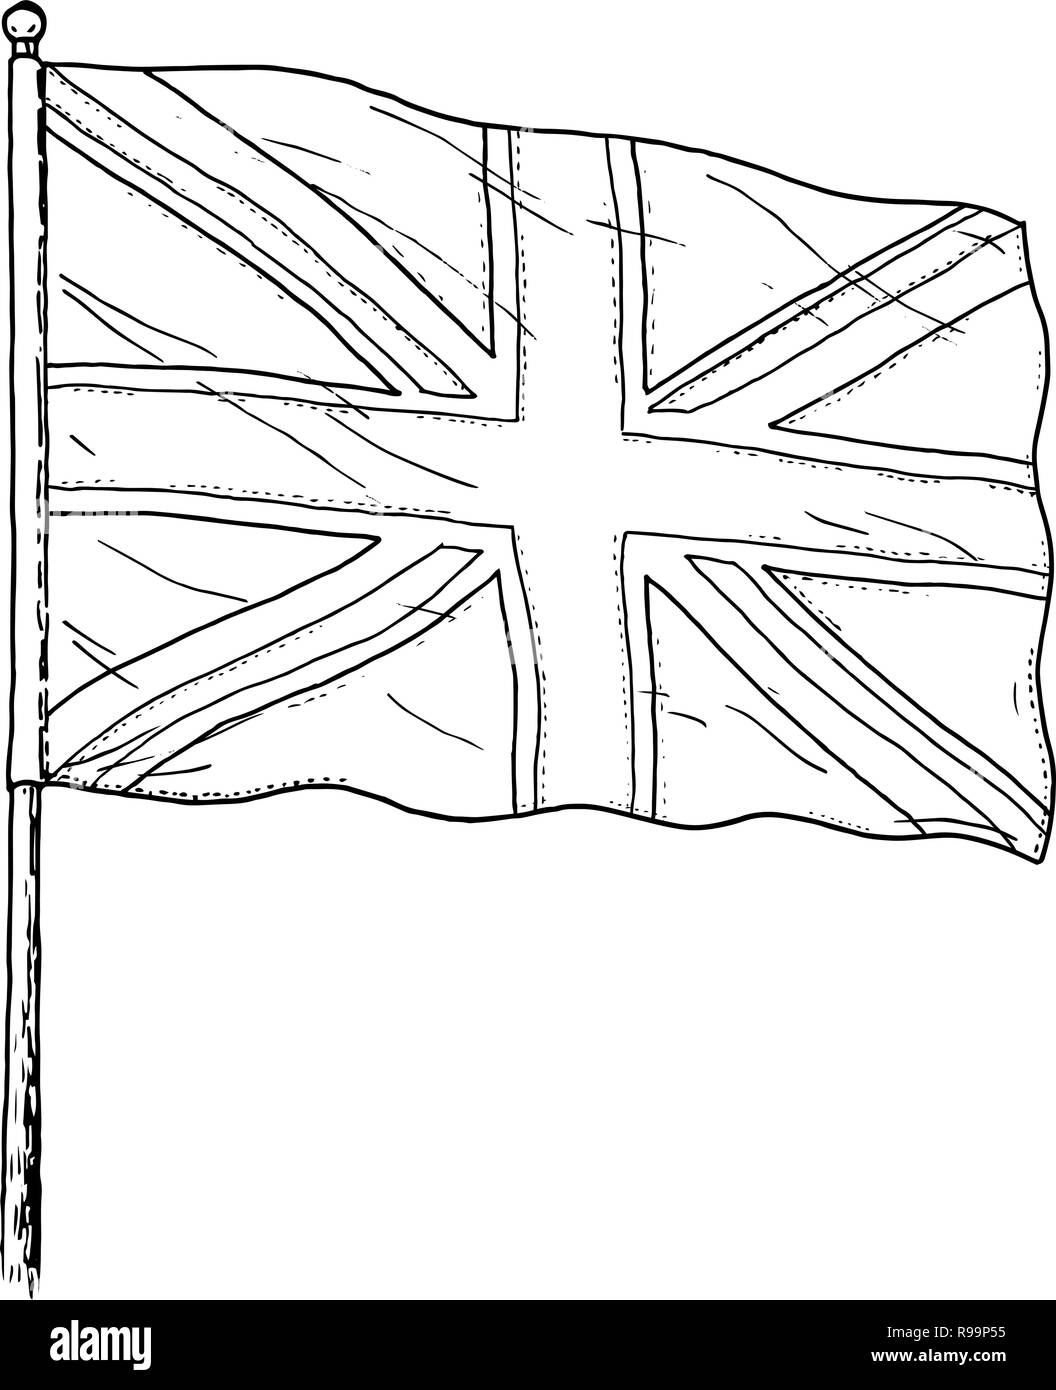 Flag of United Kingdom drawing - vintage like black and white illustration of British flag - Union Jack. Isolated on white background. Stock Vector